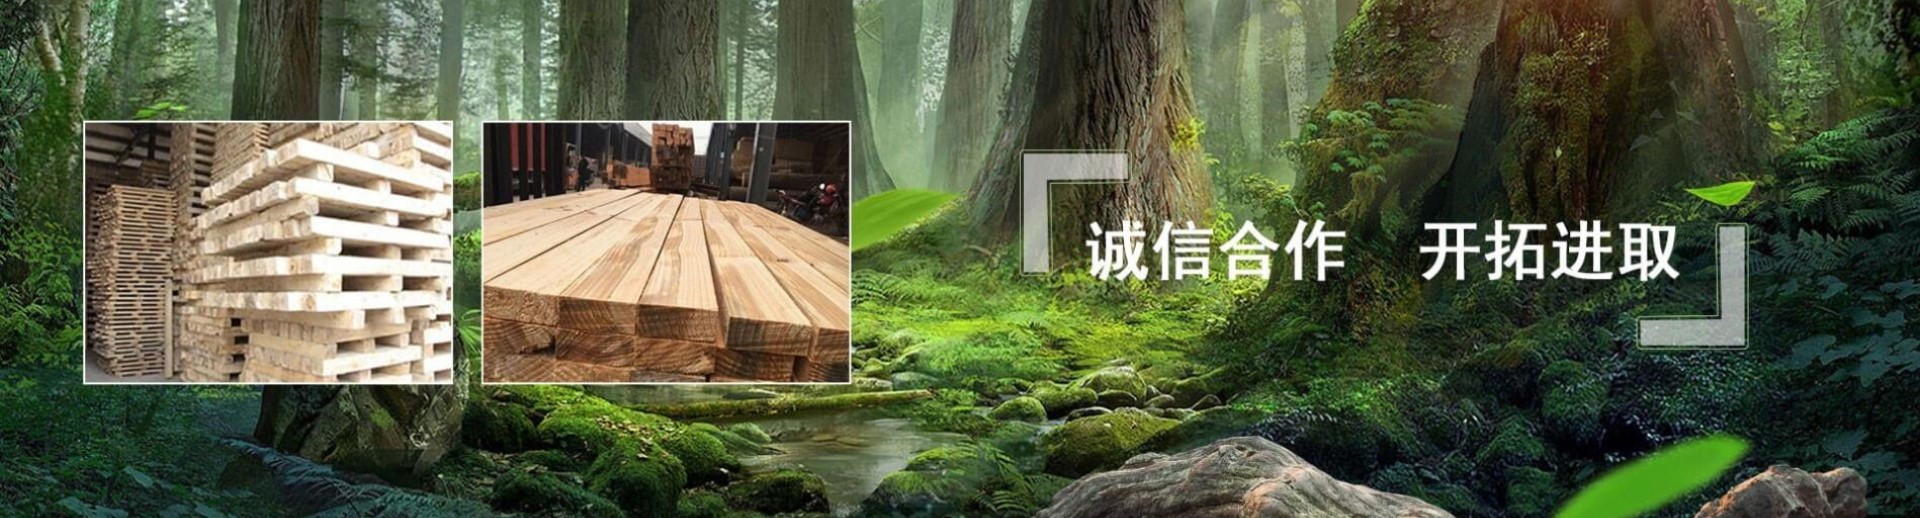 木制品加工公司响应式网站模板